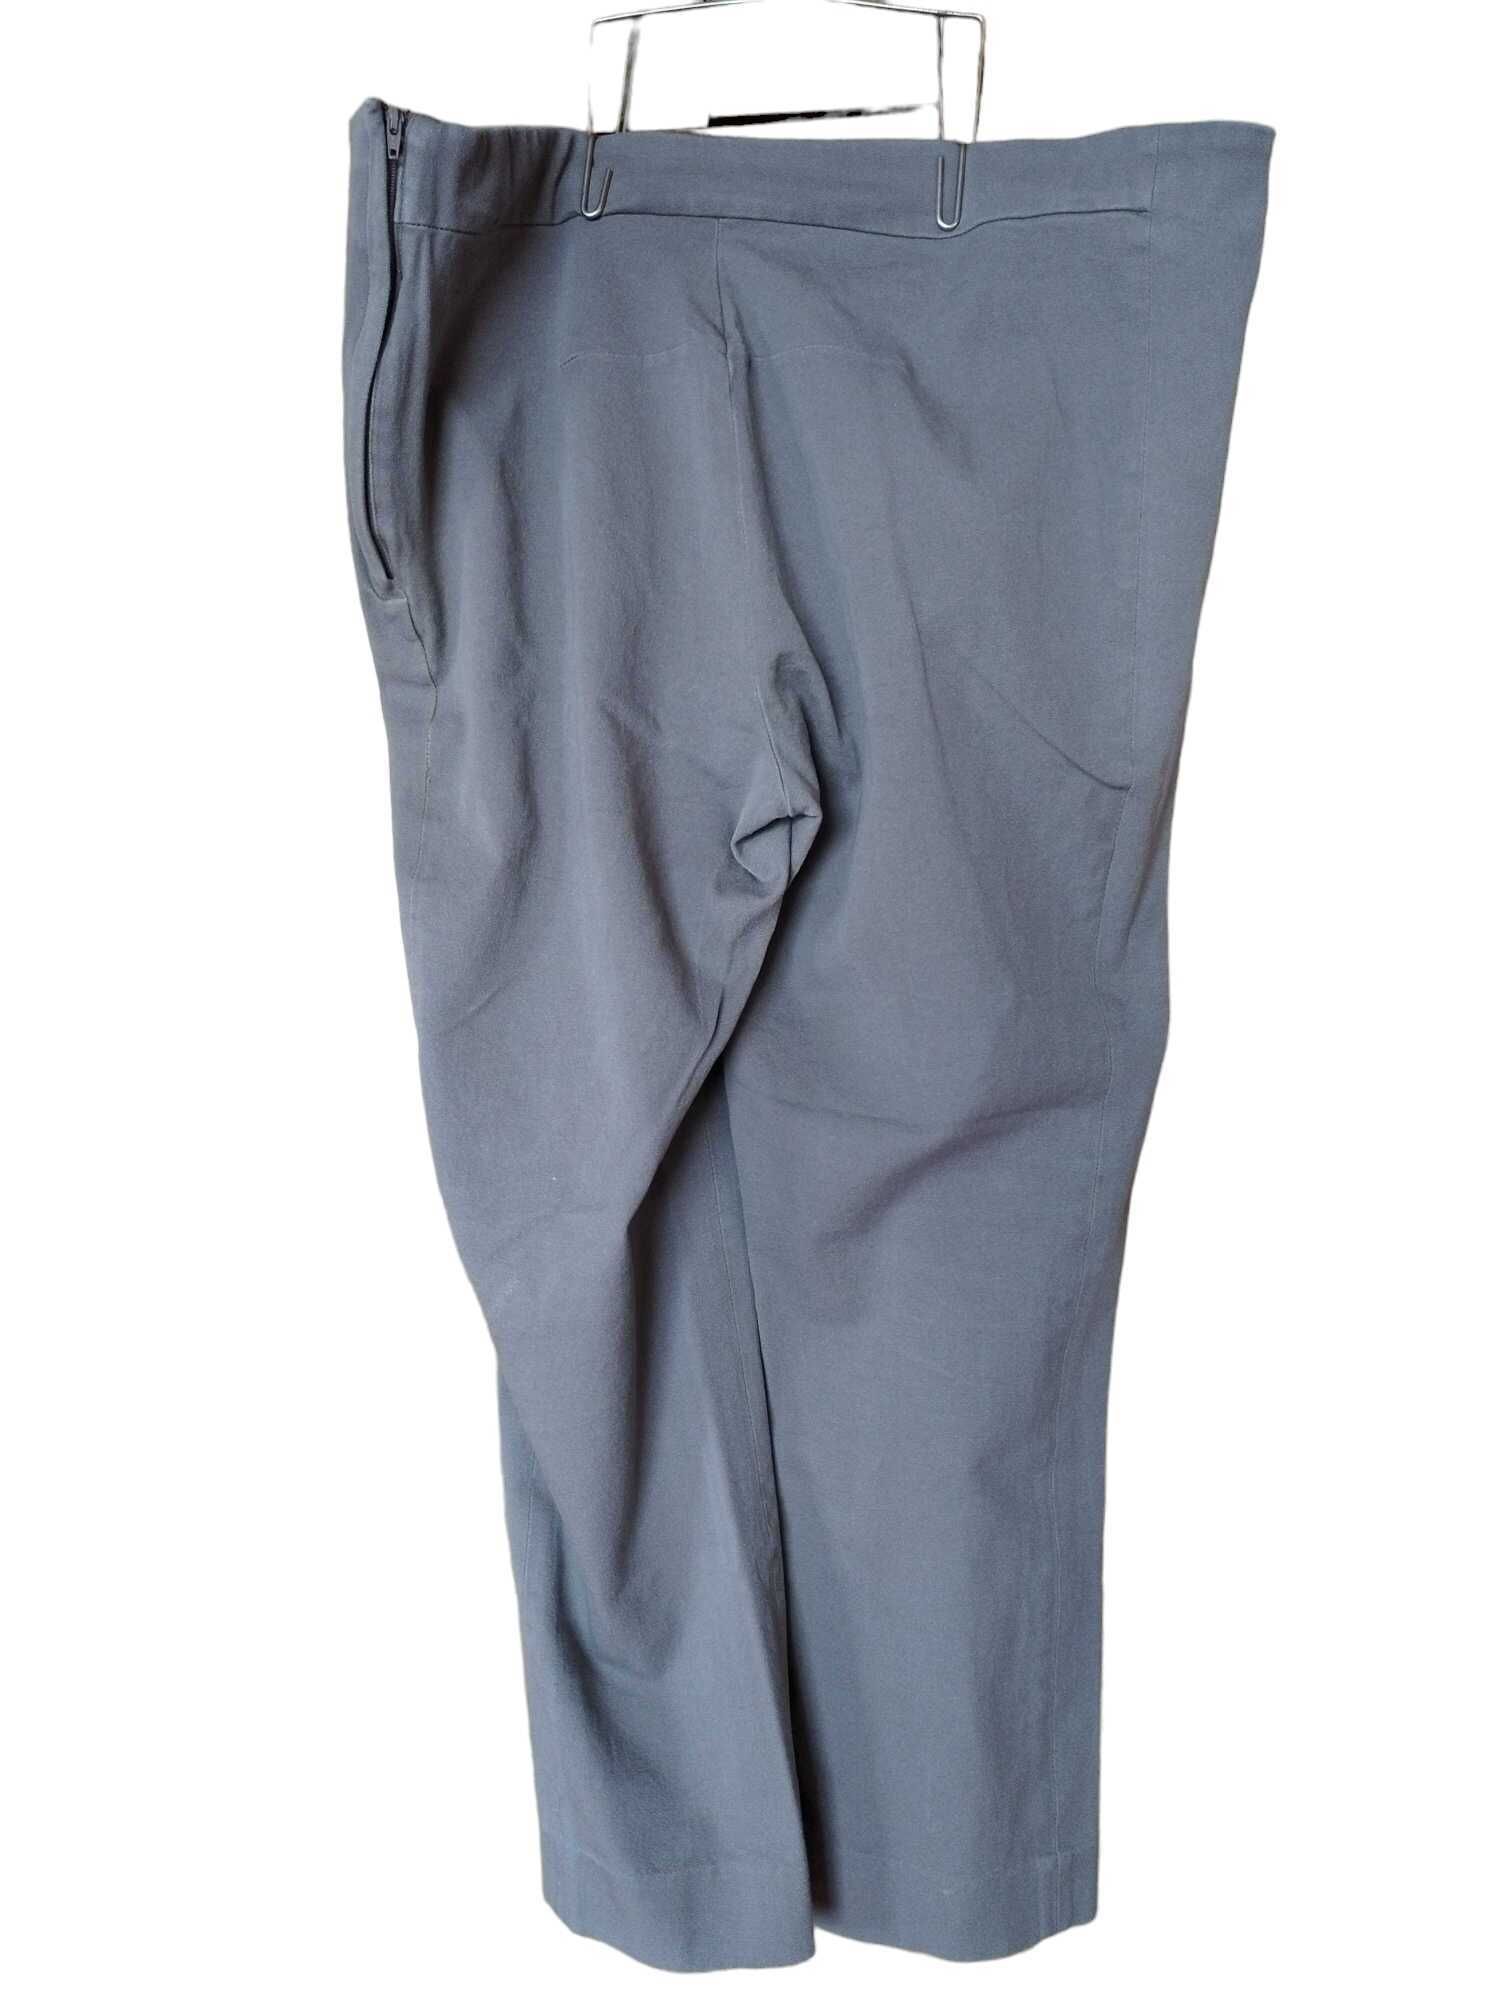 Дамски ежедневен панталон H&M, 94% памук, 6% еластан, Светлосив, 46